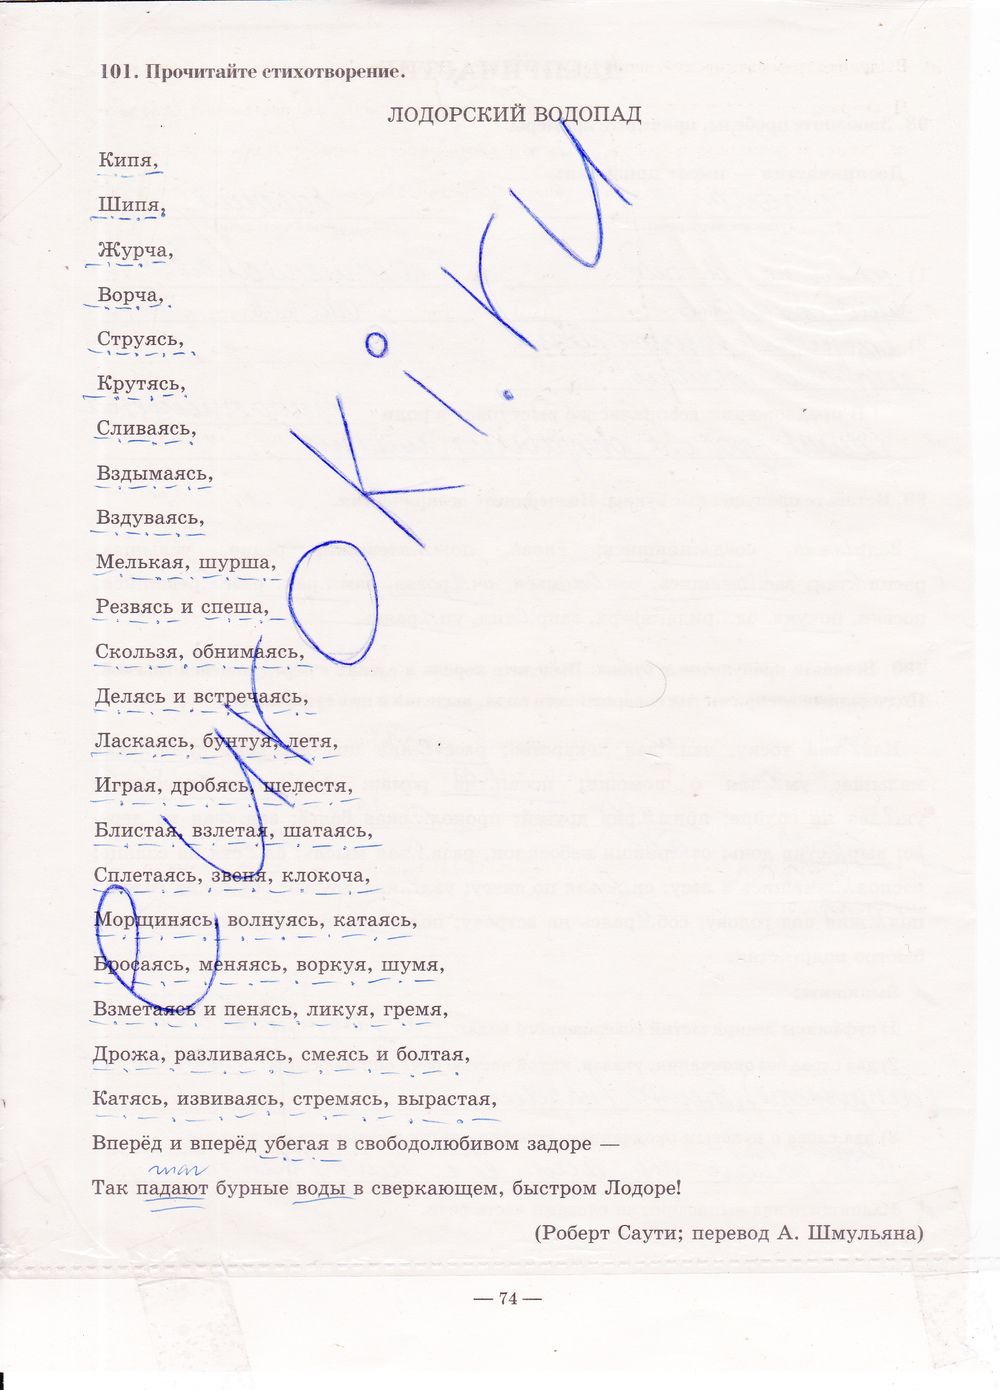 ГДЗ Русский язык 7 класс - стр. 74